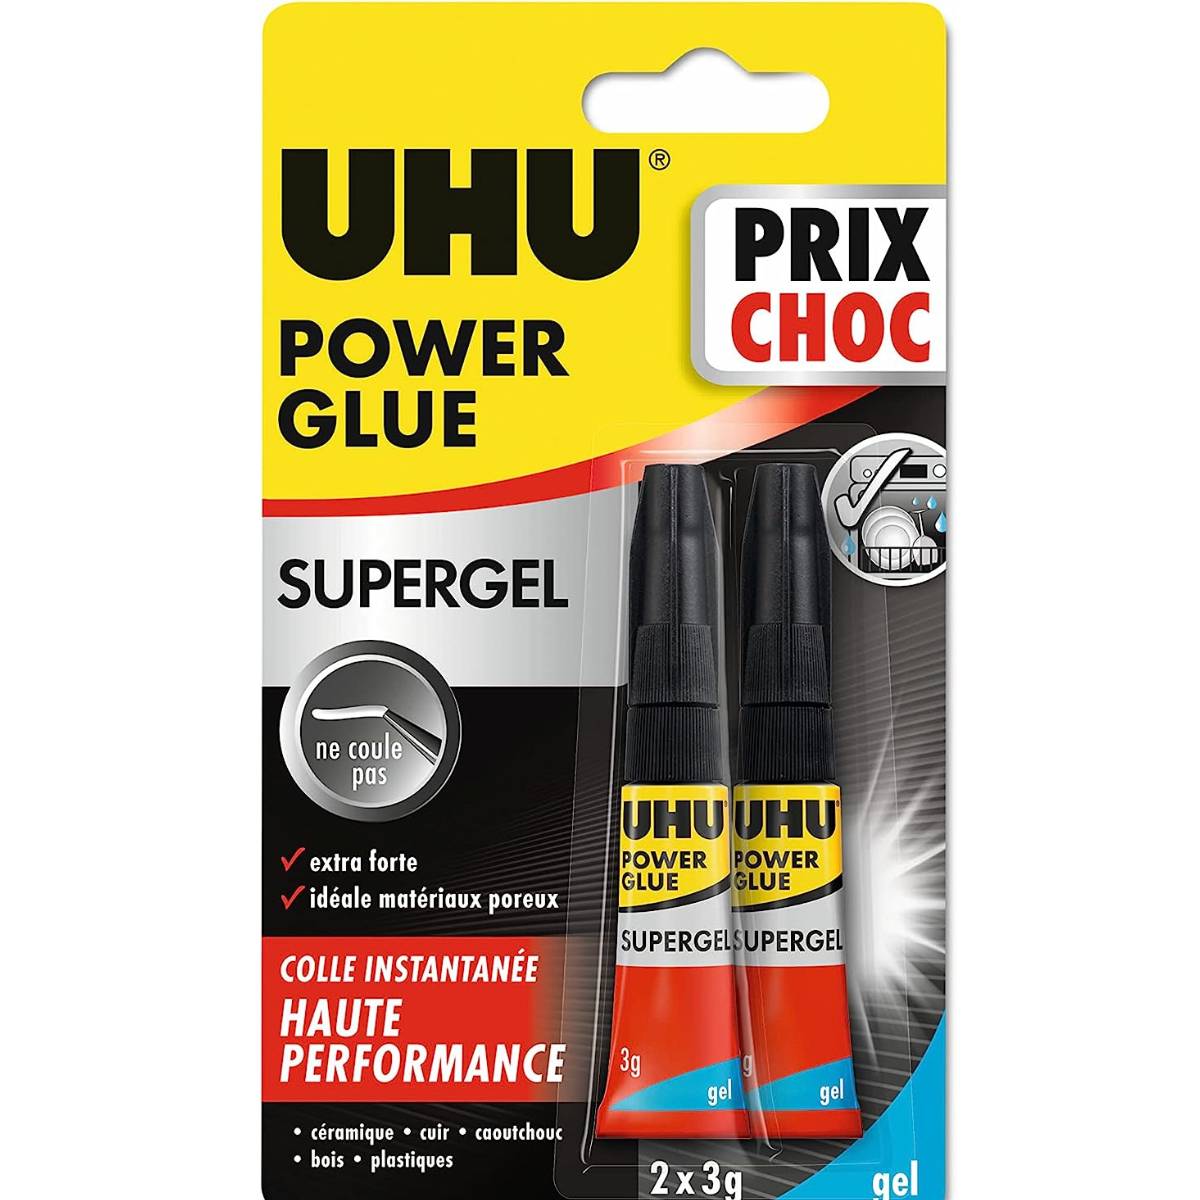 UHU Super Glue Ultra Fast Liquid 3g 